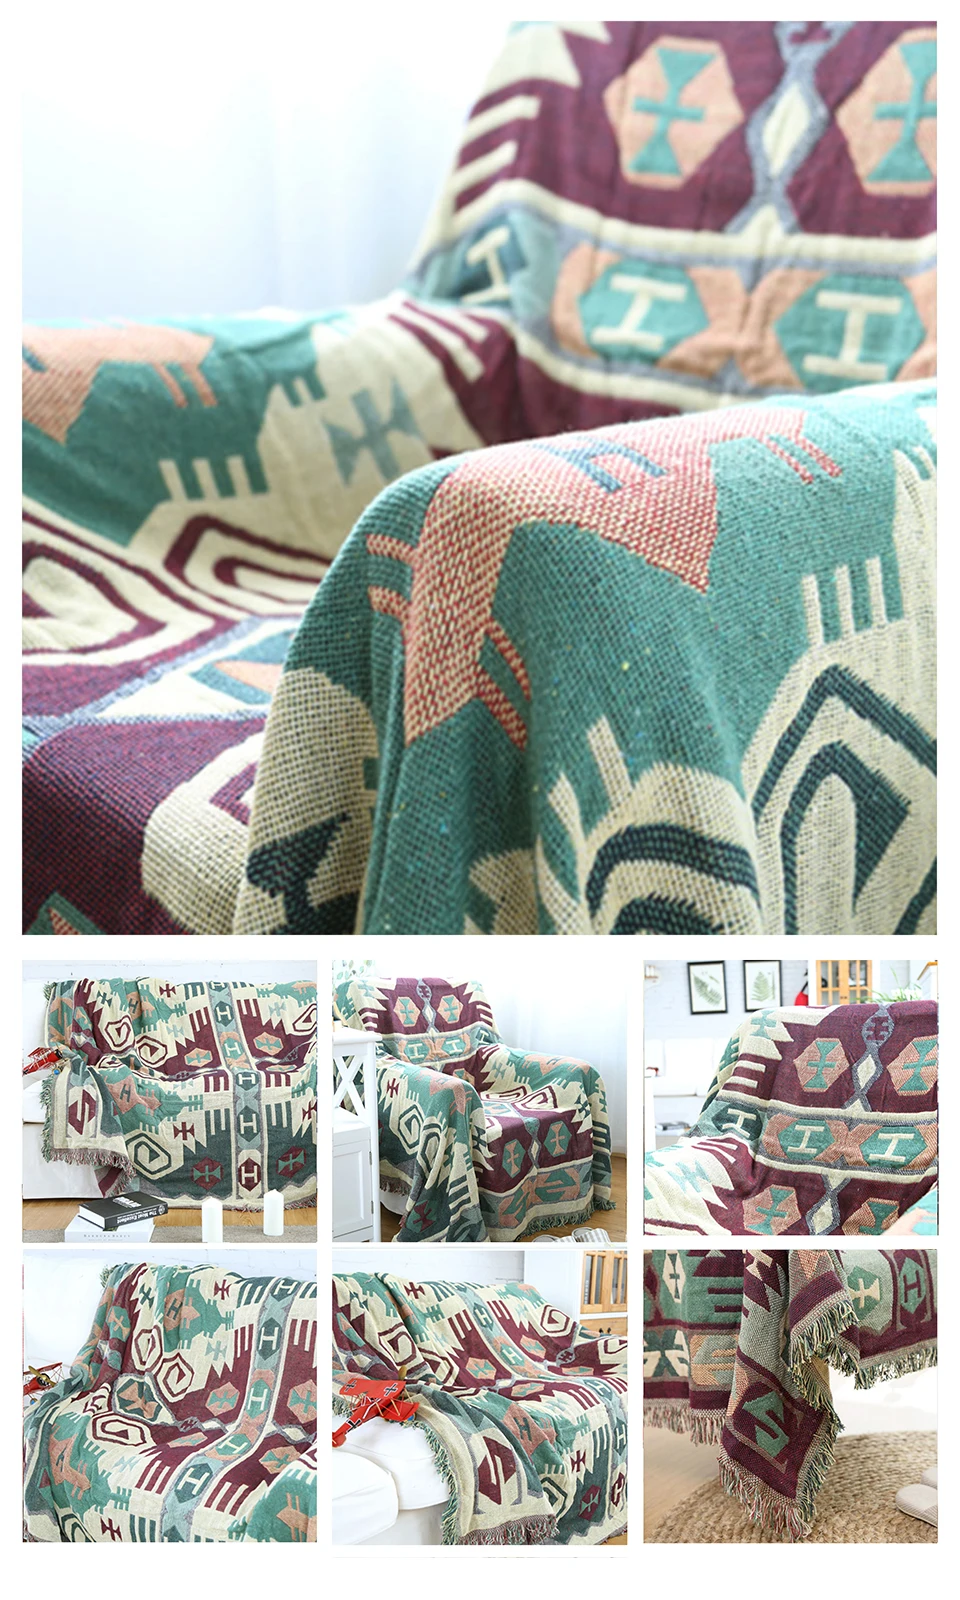 Паркшин богемный стиль вязаное одеяло Анти Грязный теплый прямоугольник 100% хлопковое покрывало для кровати диван покрывало для декора